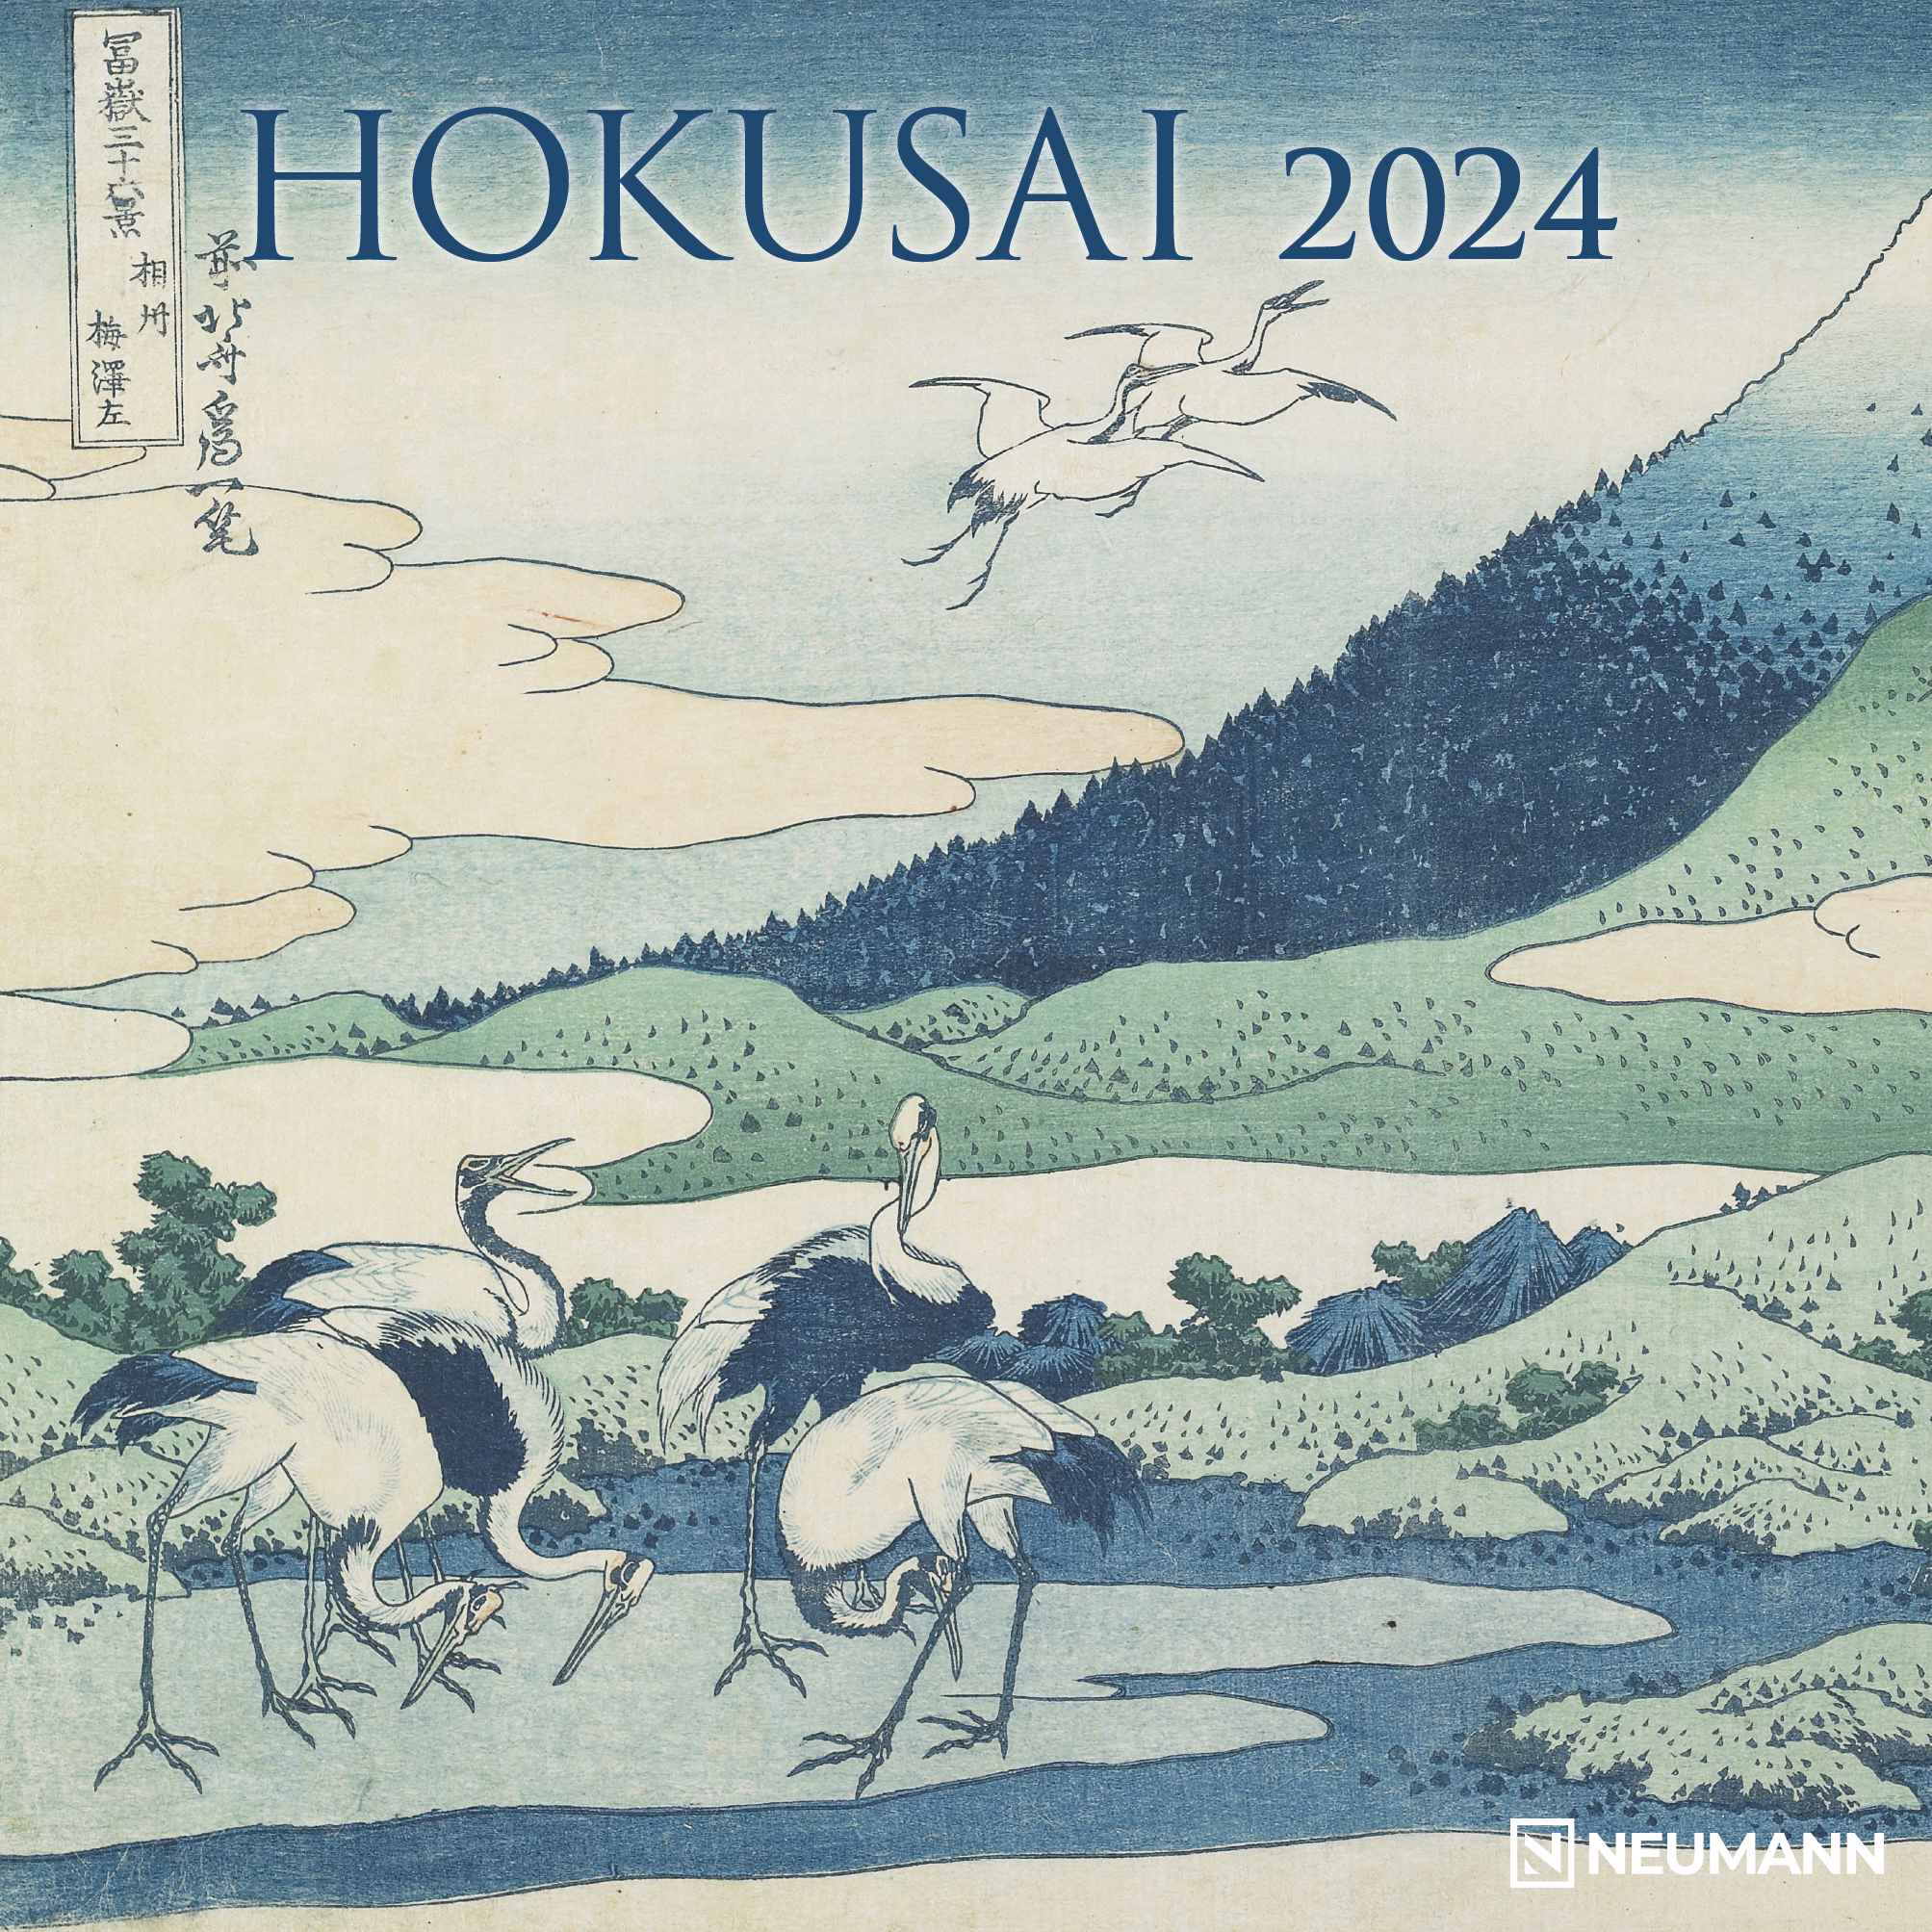 2024 Hokusai (Neumann)- Square Wall Calendar